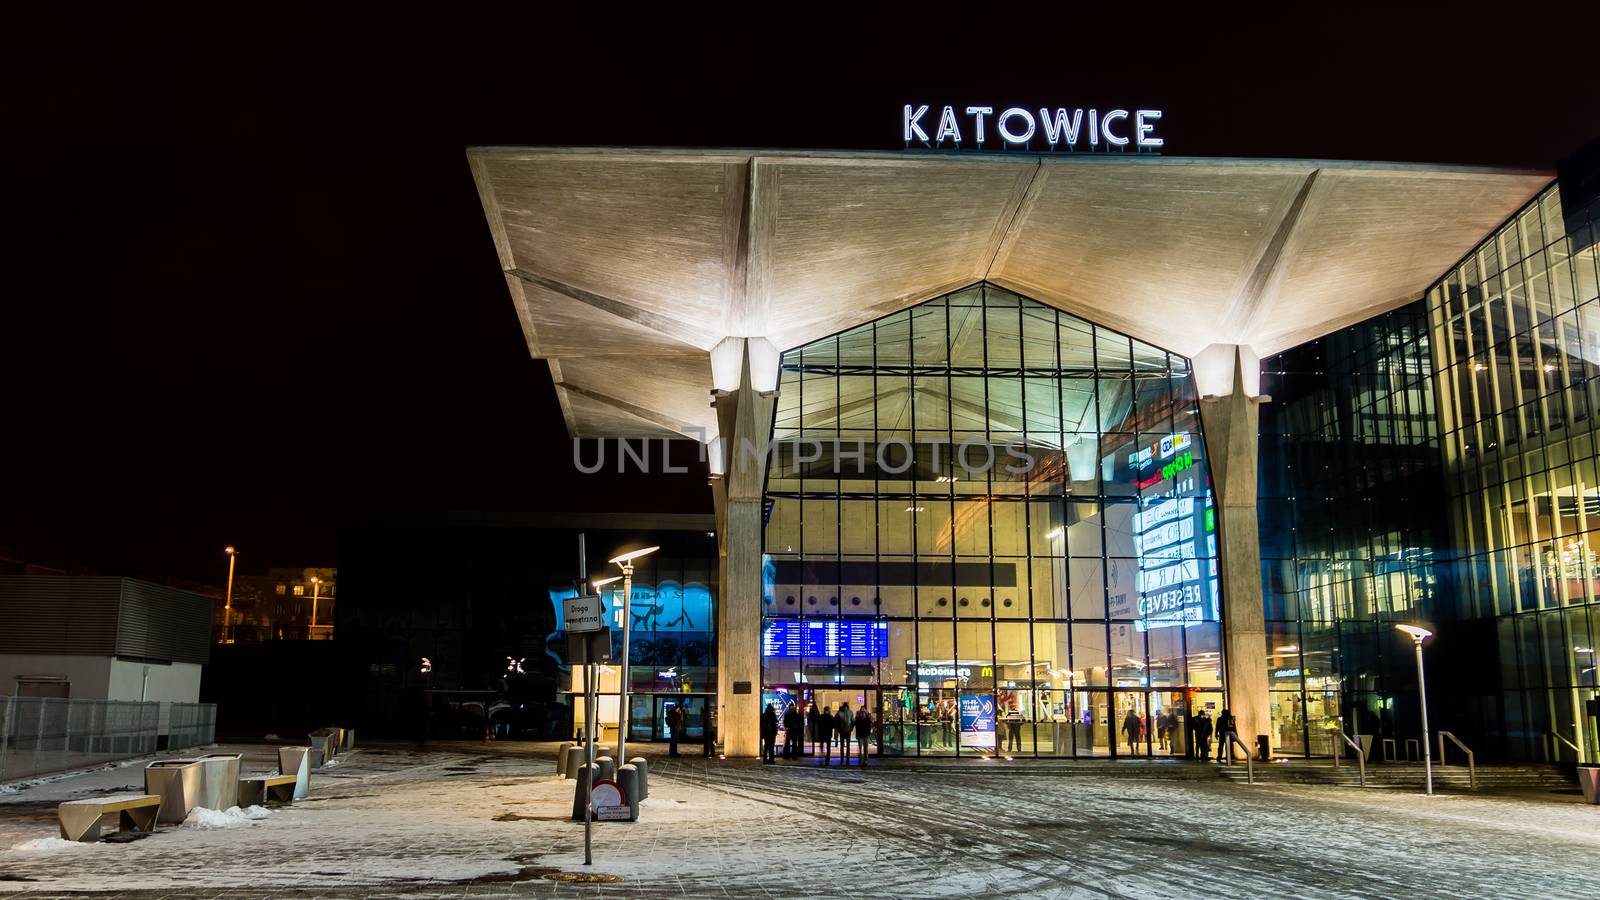 Railway station  in Katowice by pawel_szczepanski